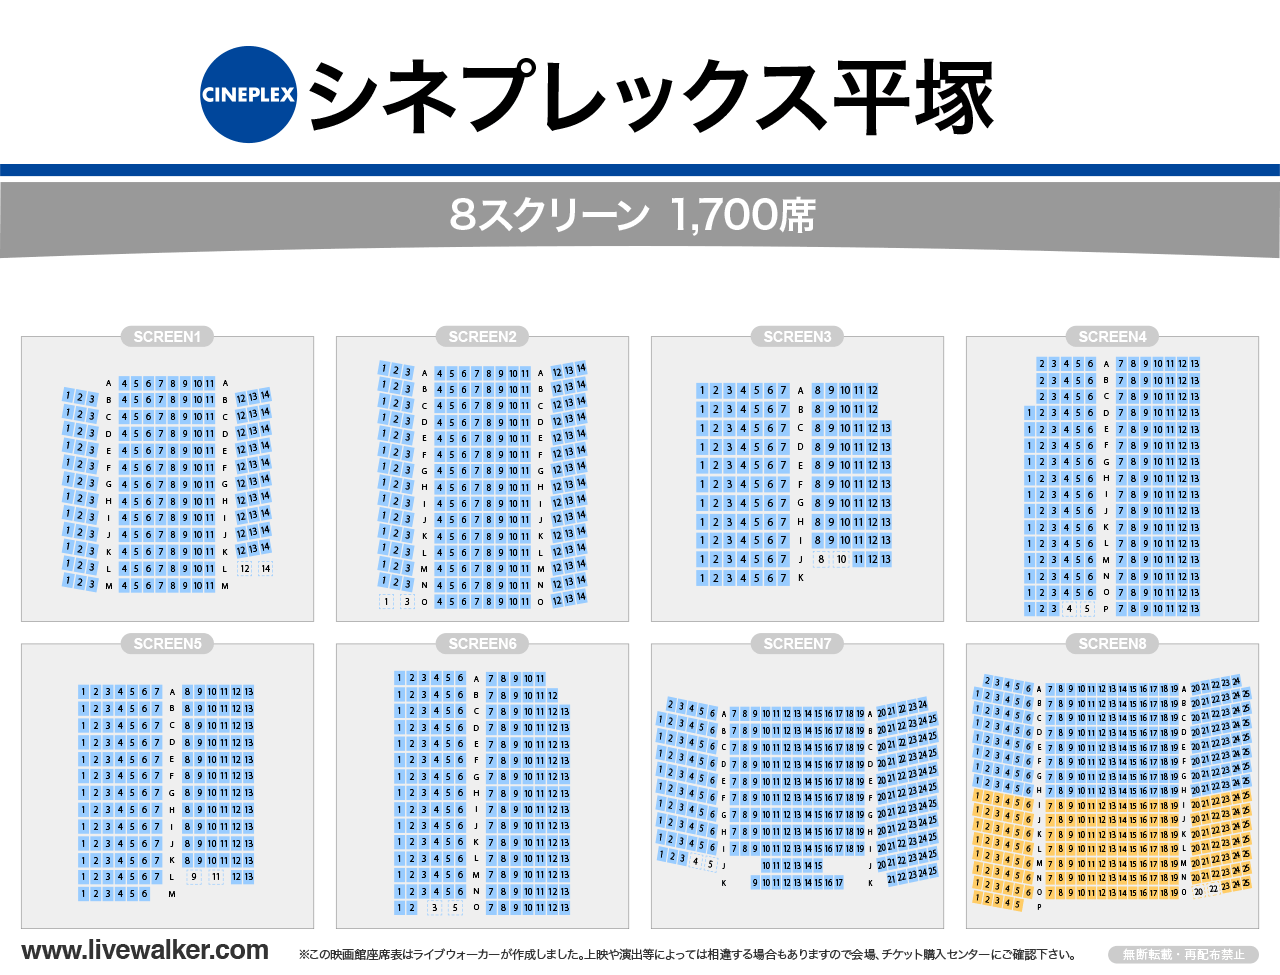 シネプレックス平塚スクリーンの座席表